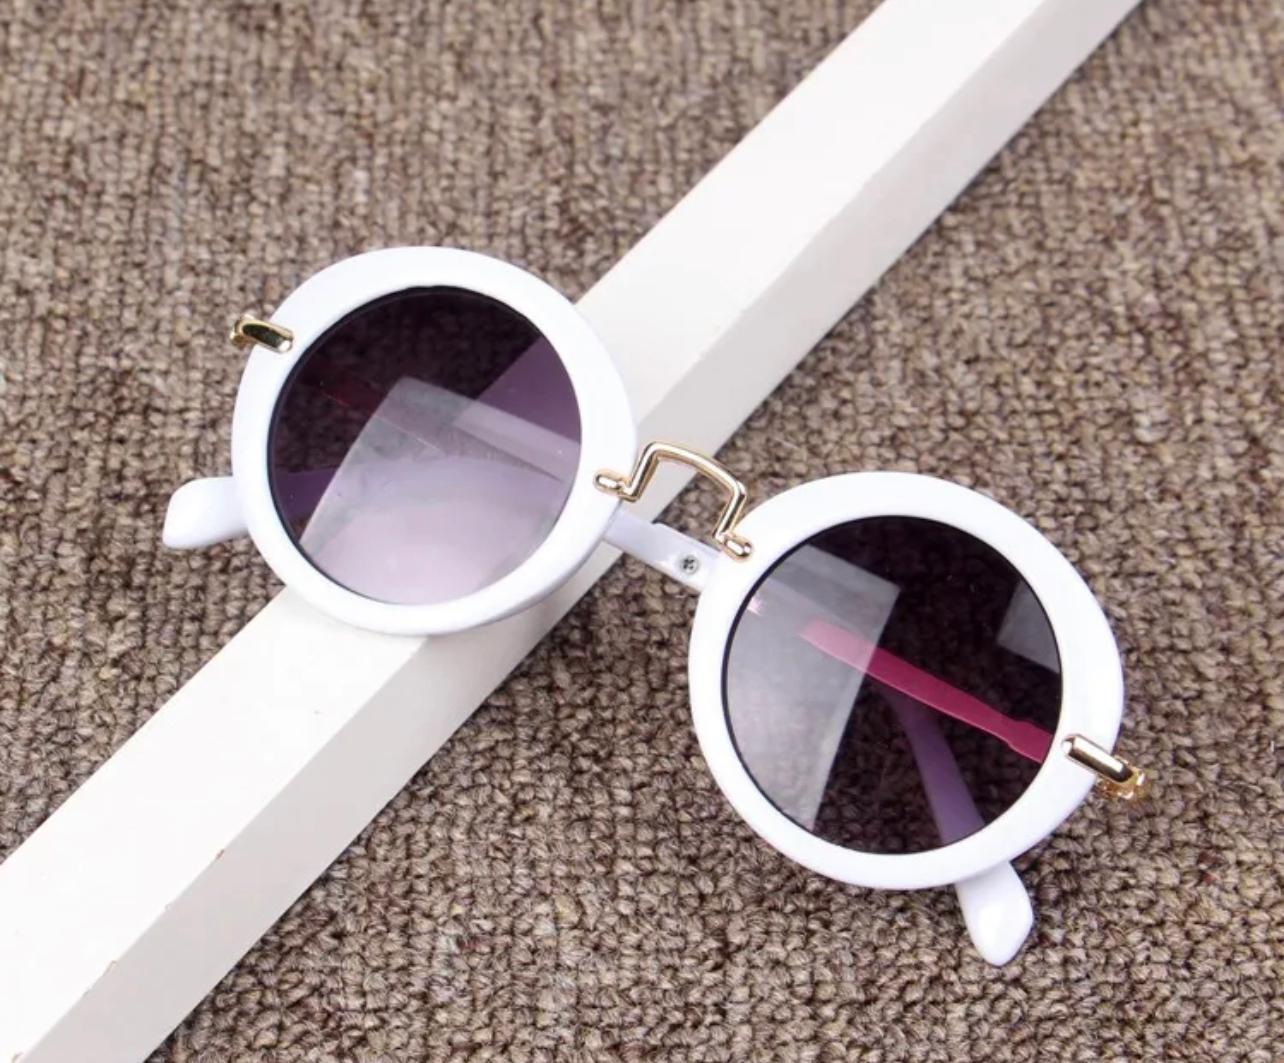 Polarized girls sunglasses